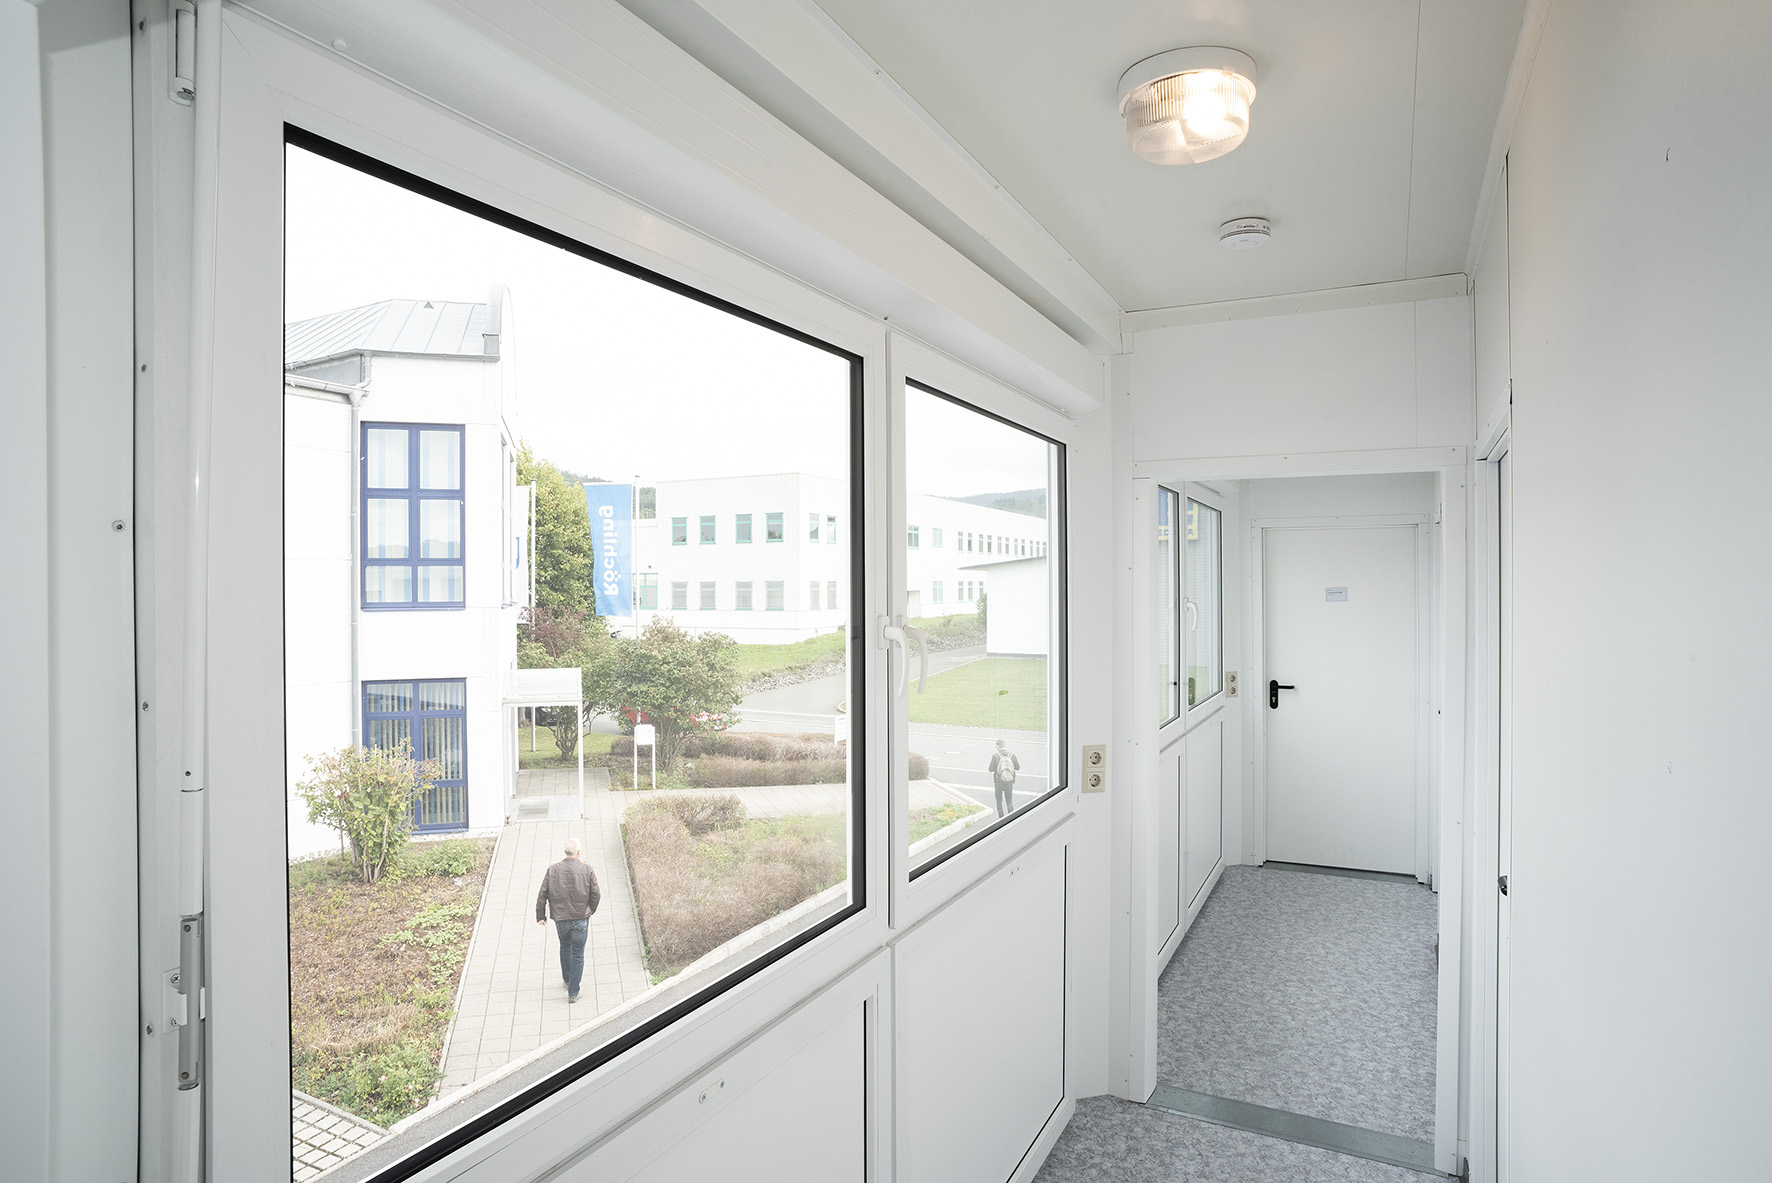 Les couloirs intérieurs avec fenêtres permettent de relier les bureaux individuels.